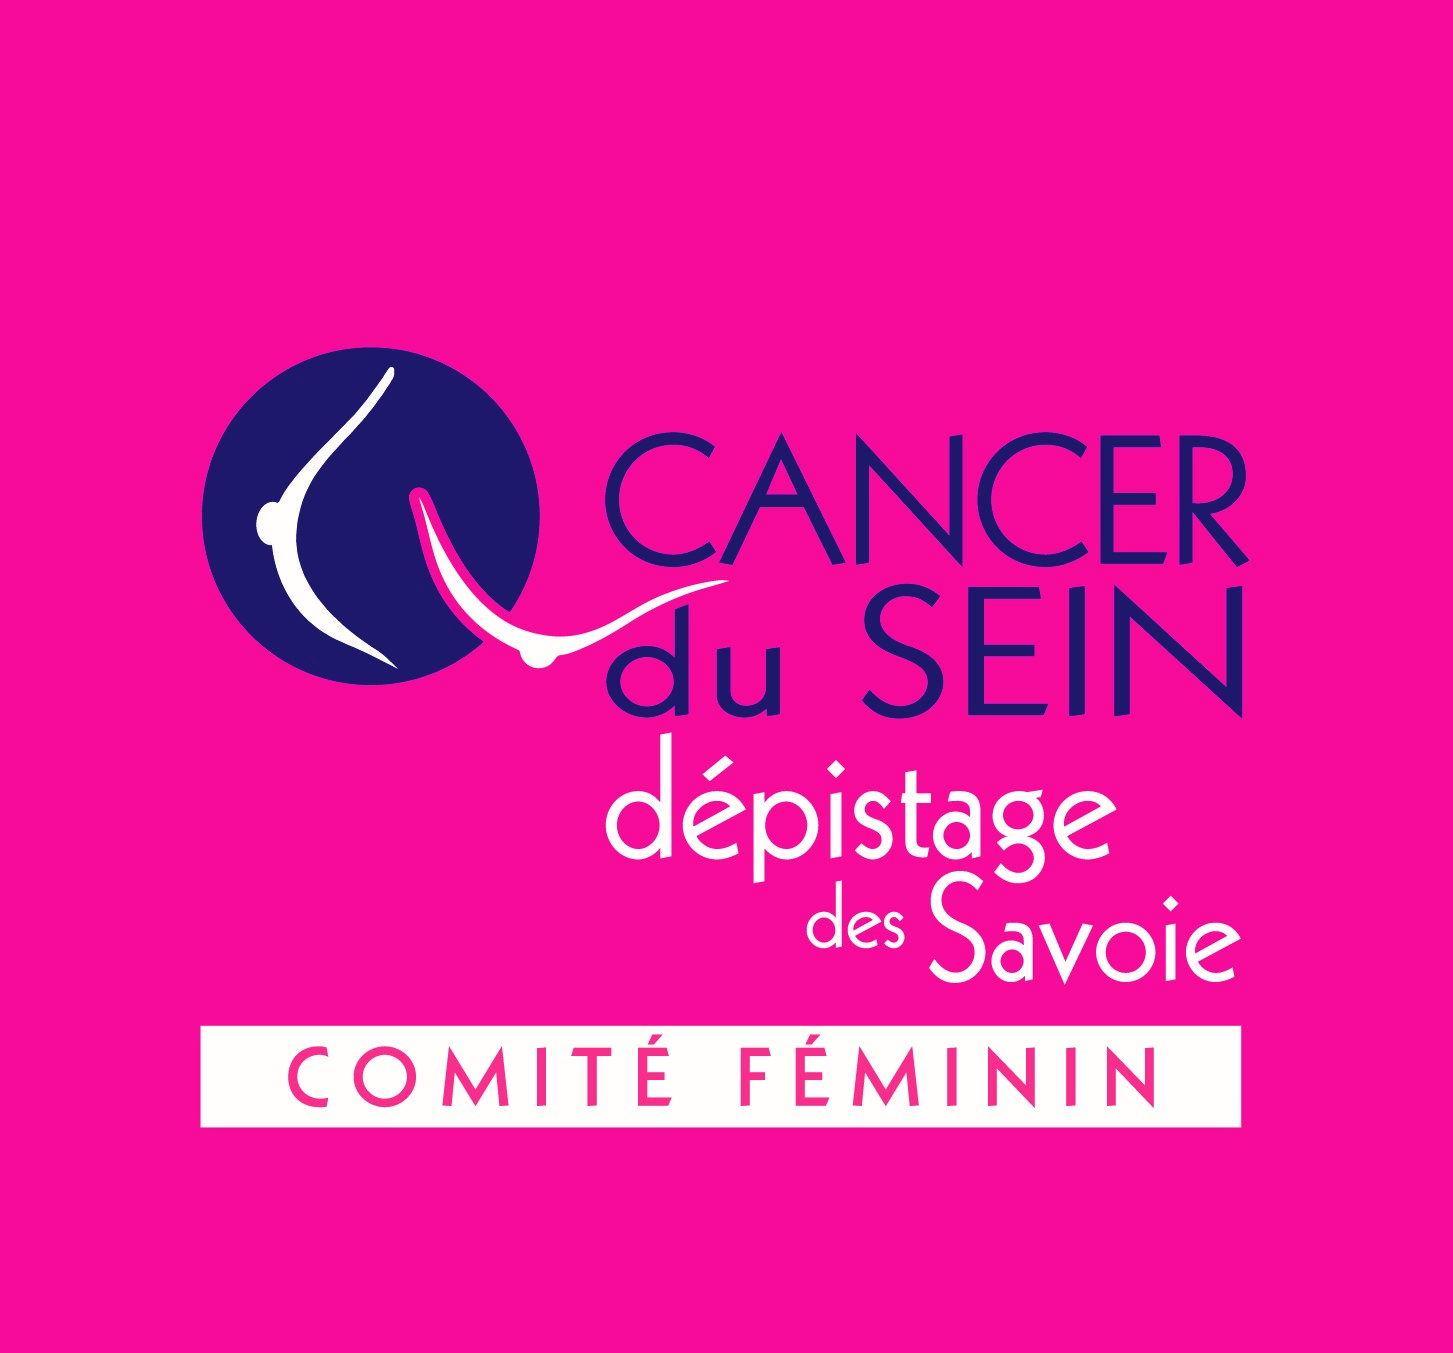 Comité féminin pour le dépistage du cancer du sein des Savoie